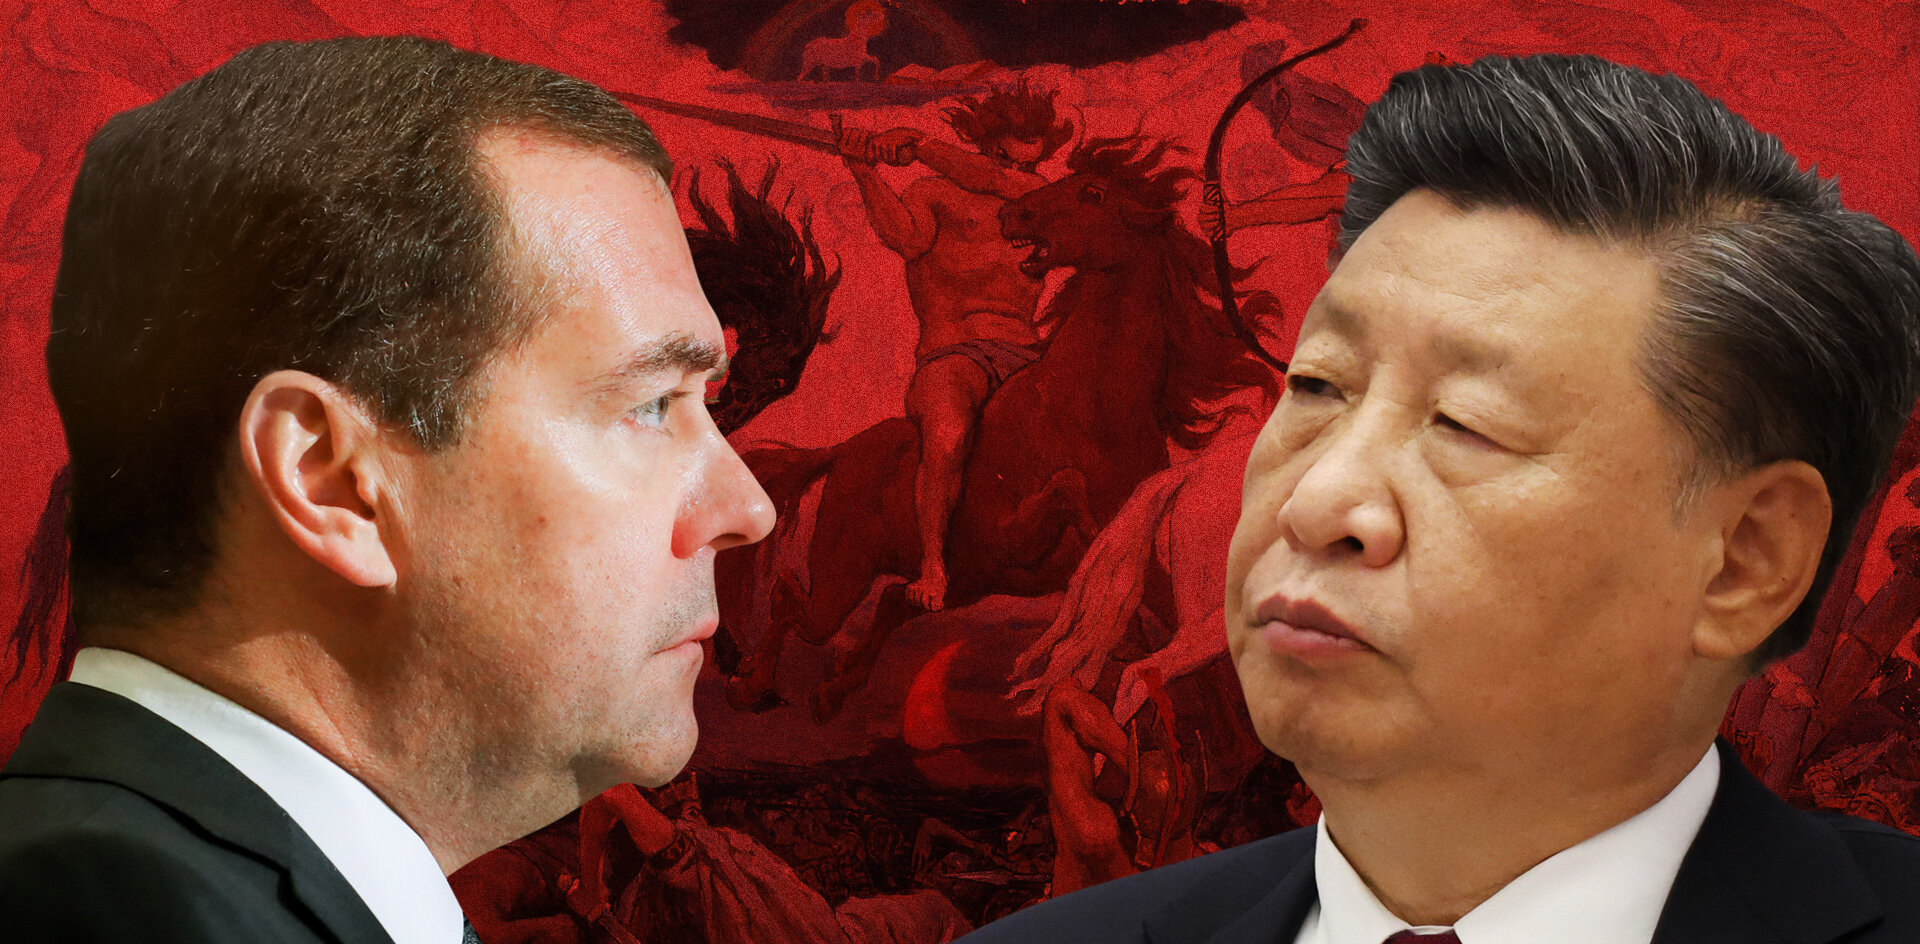 Угрозы и ругательства прокладывают Медведеву путь на властный олимп